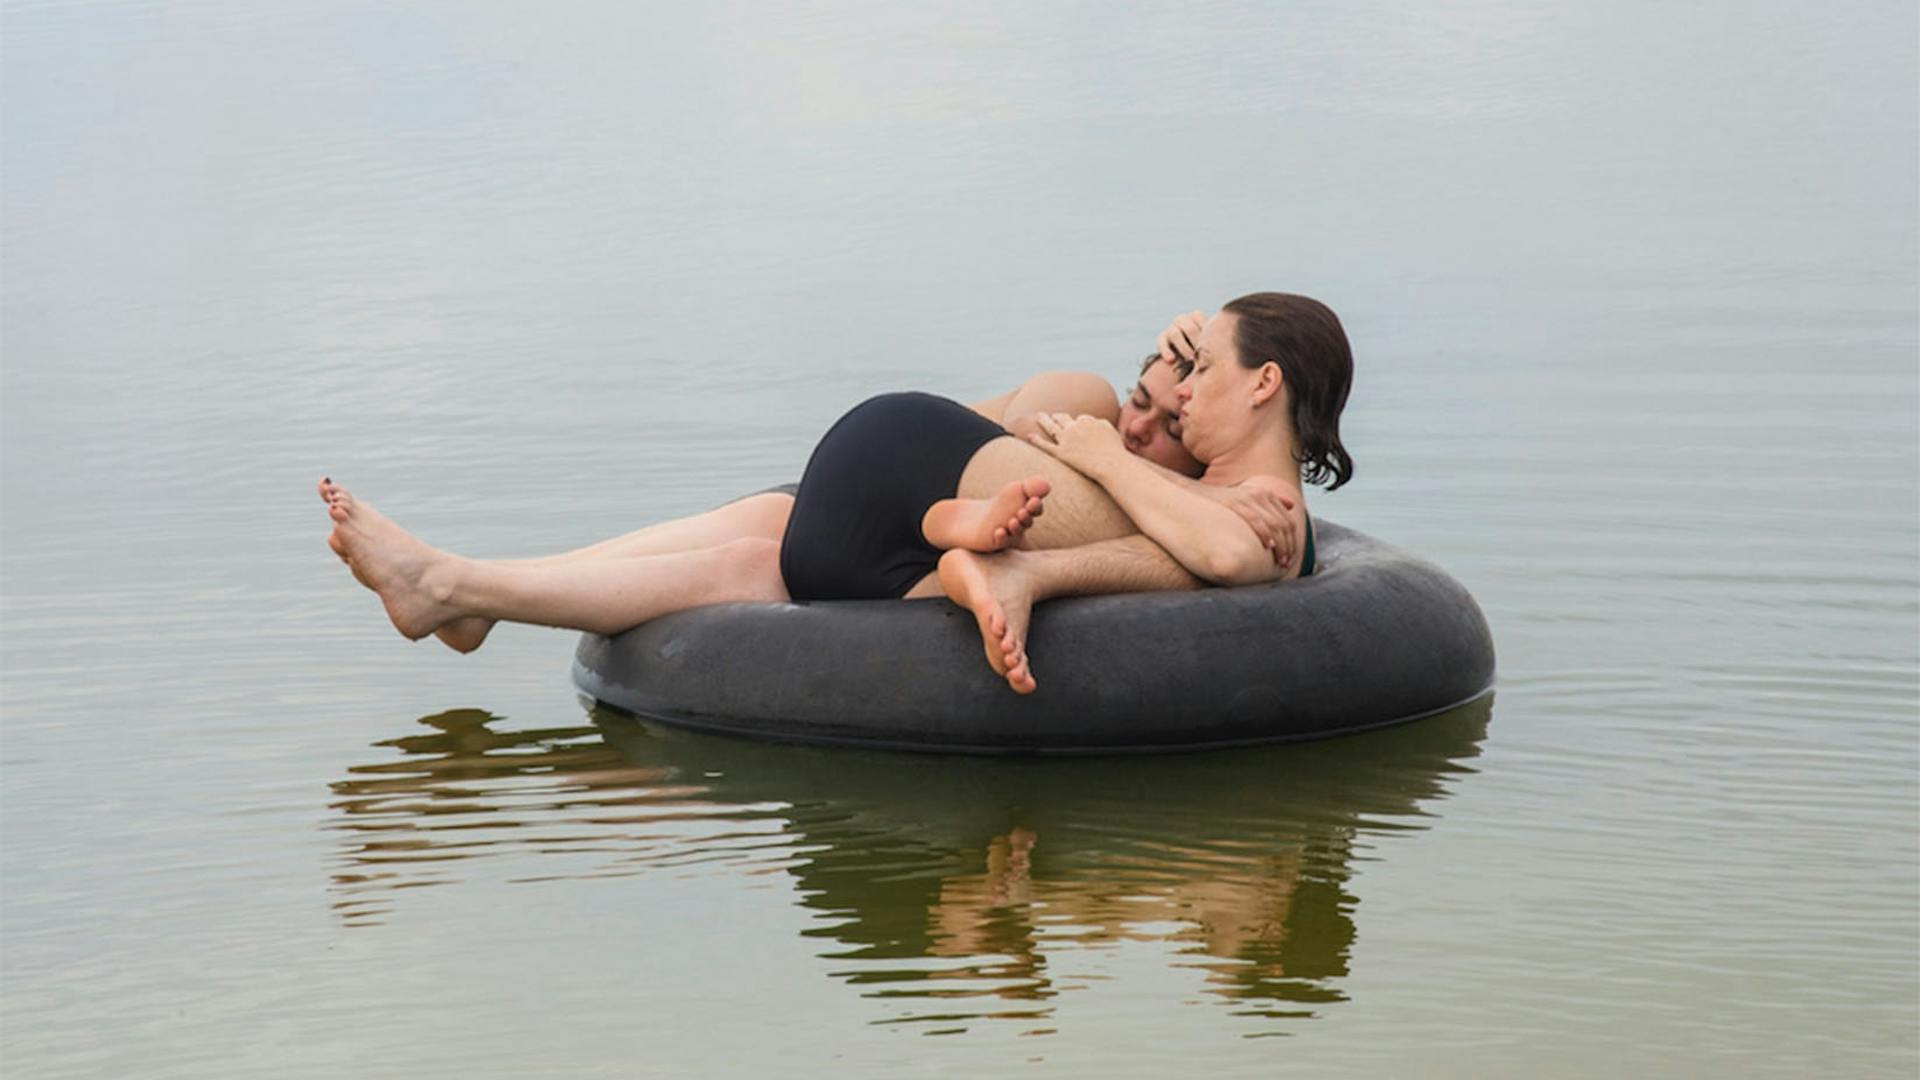 Uma mãe segura seu filho adolescente nos braços. Ambos estão em uma boia redonda dentro do mar.